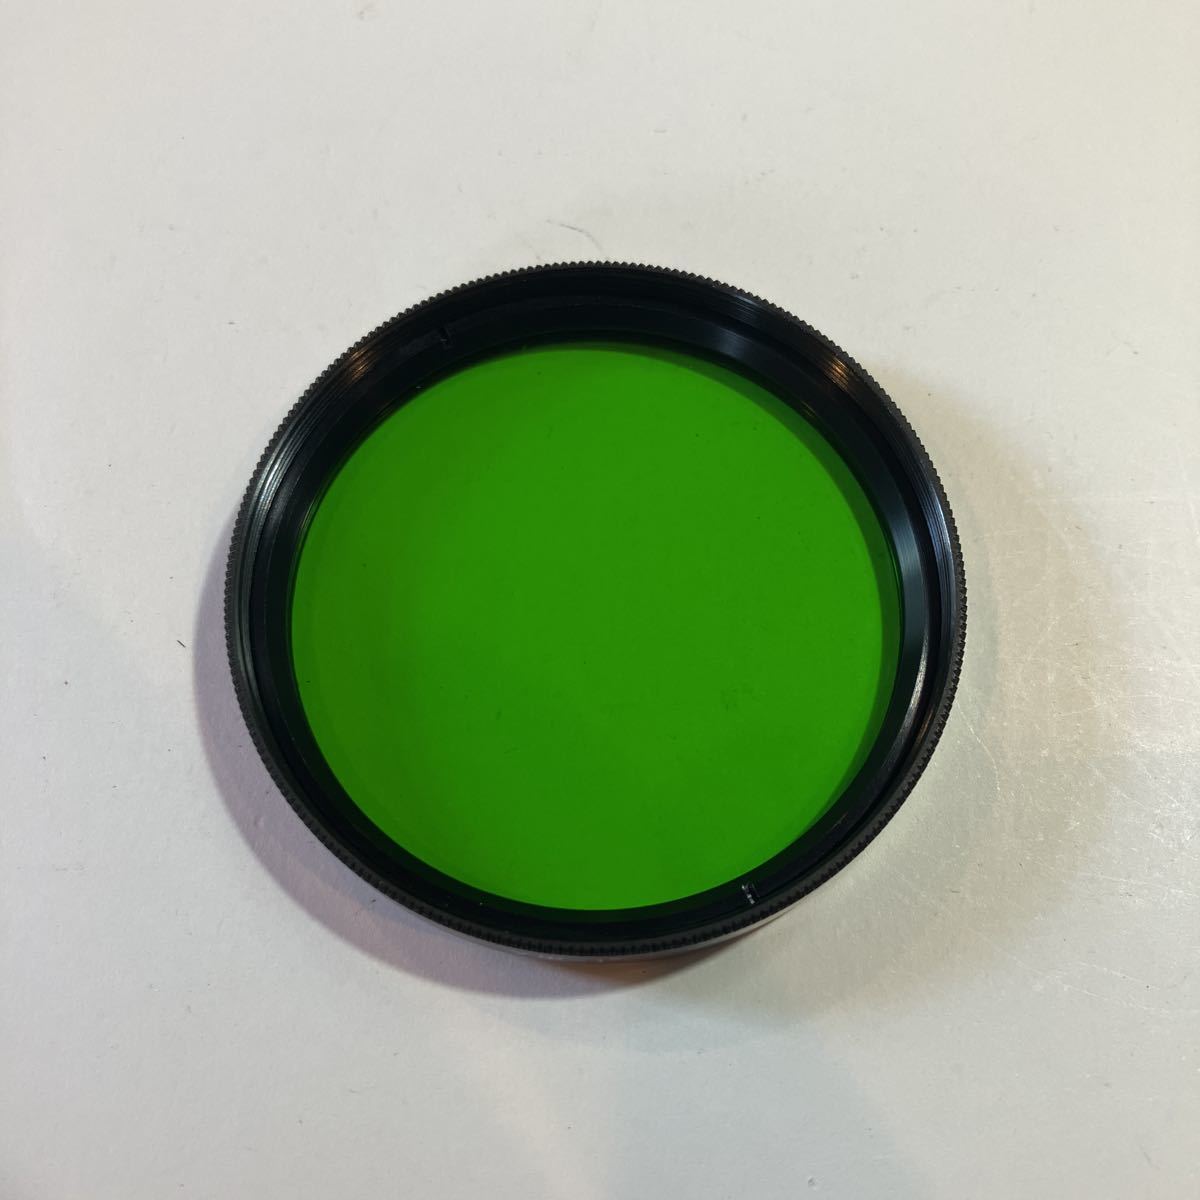  фильтр so полосный производства y-1× зеленый 58MM винт включая тип ④ прекрасный товар 